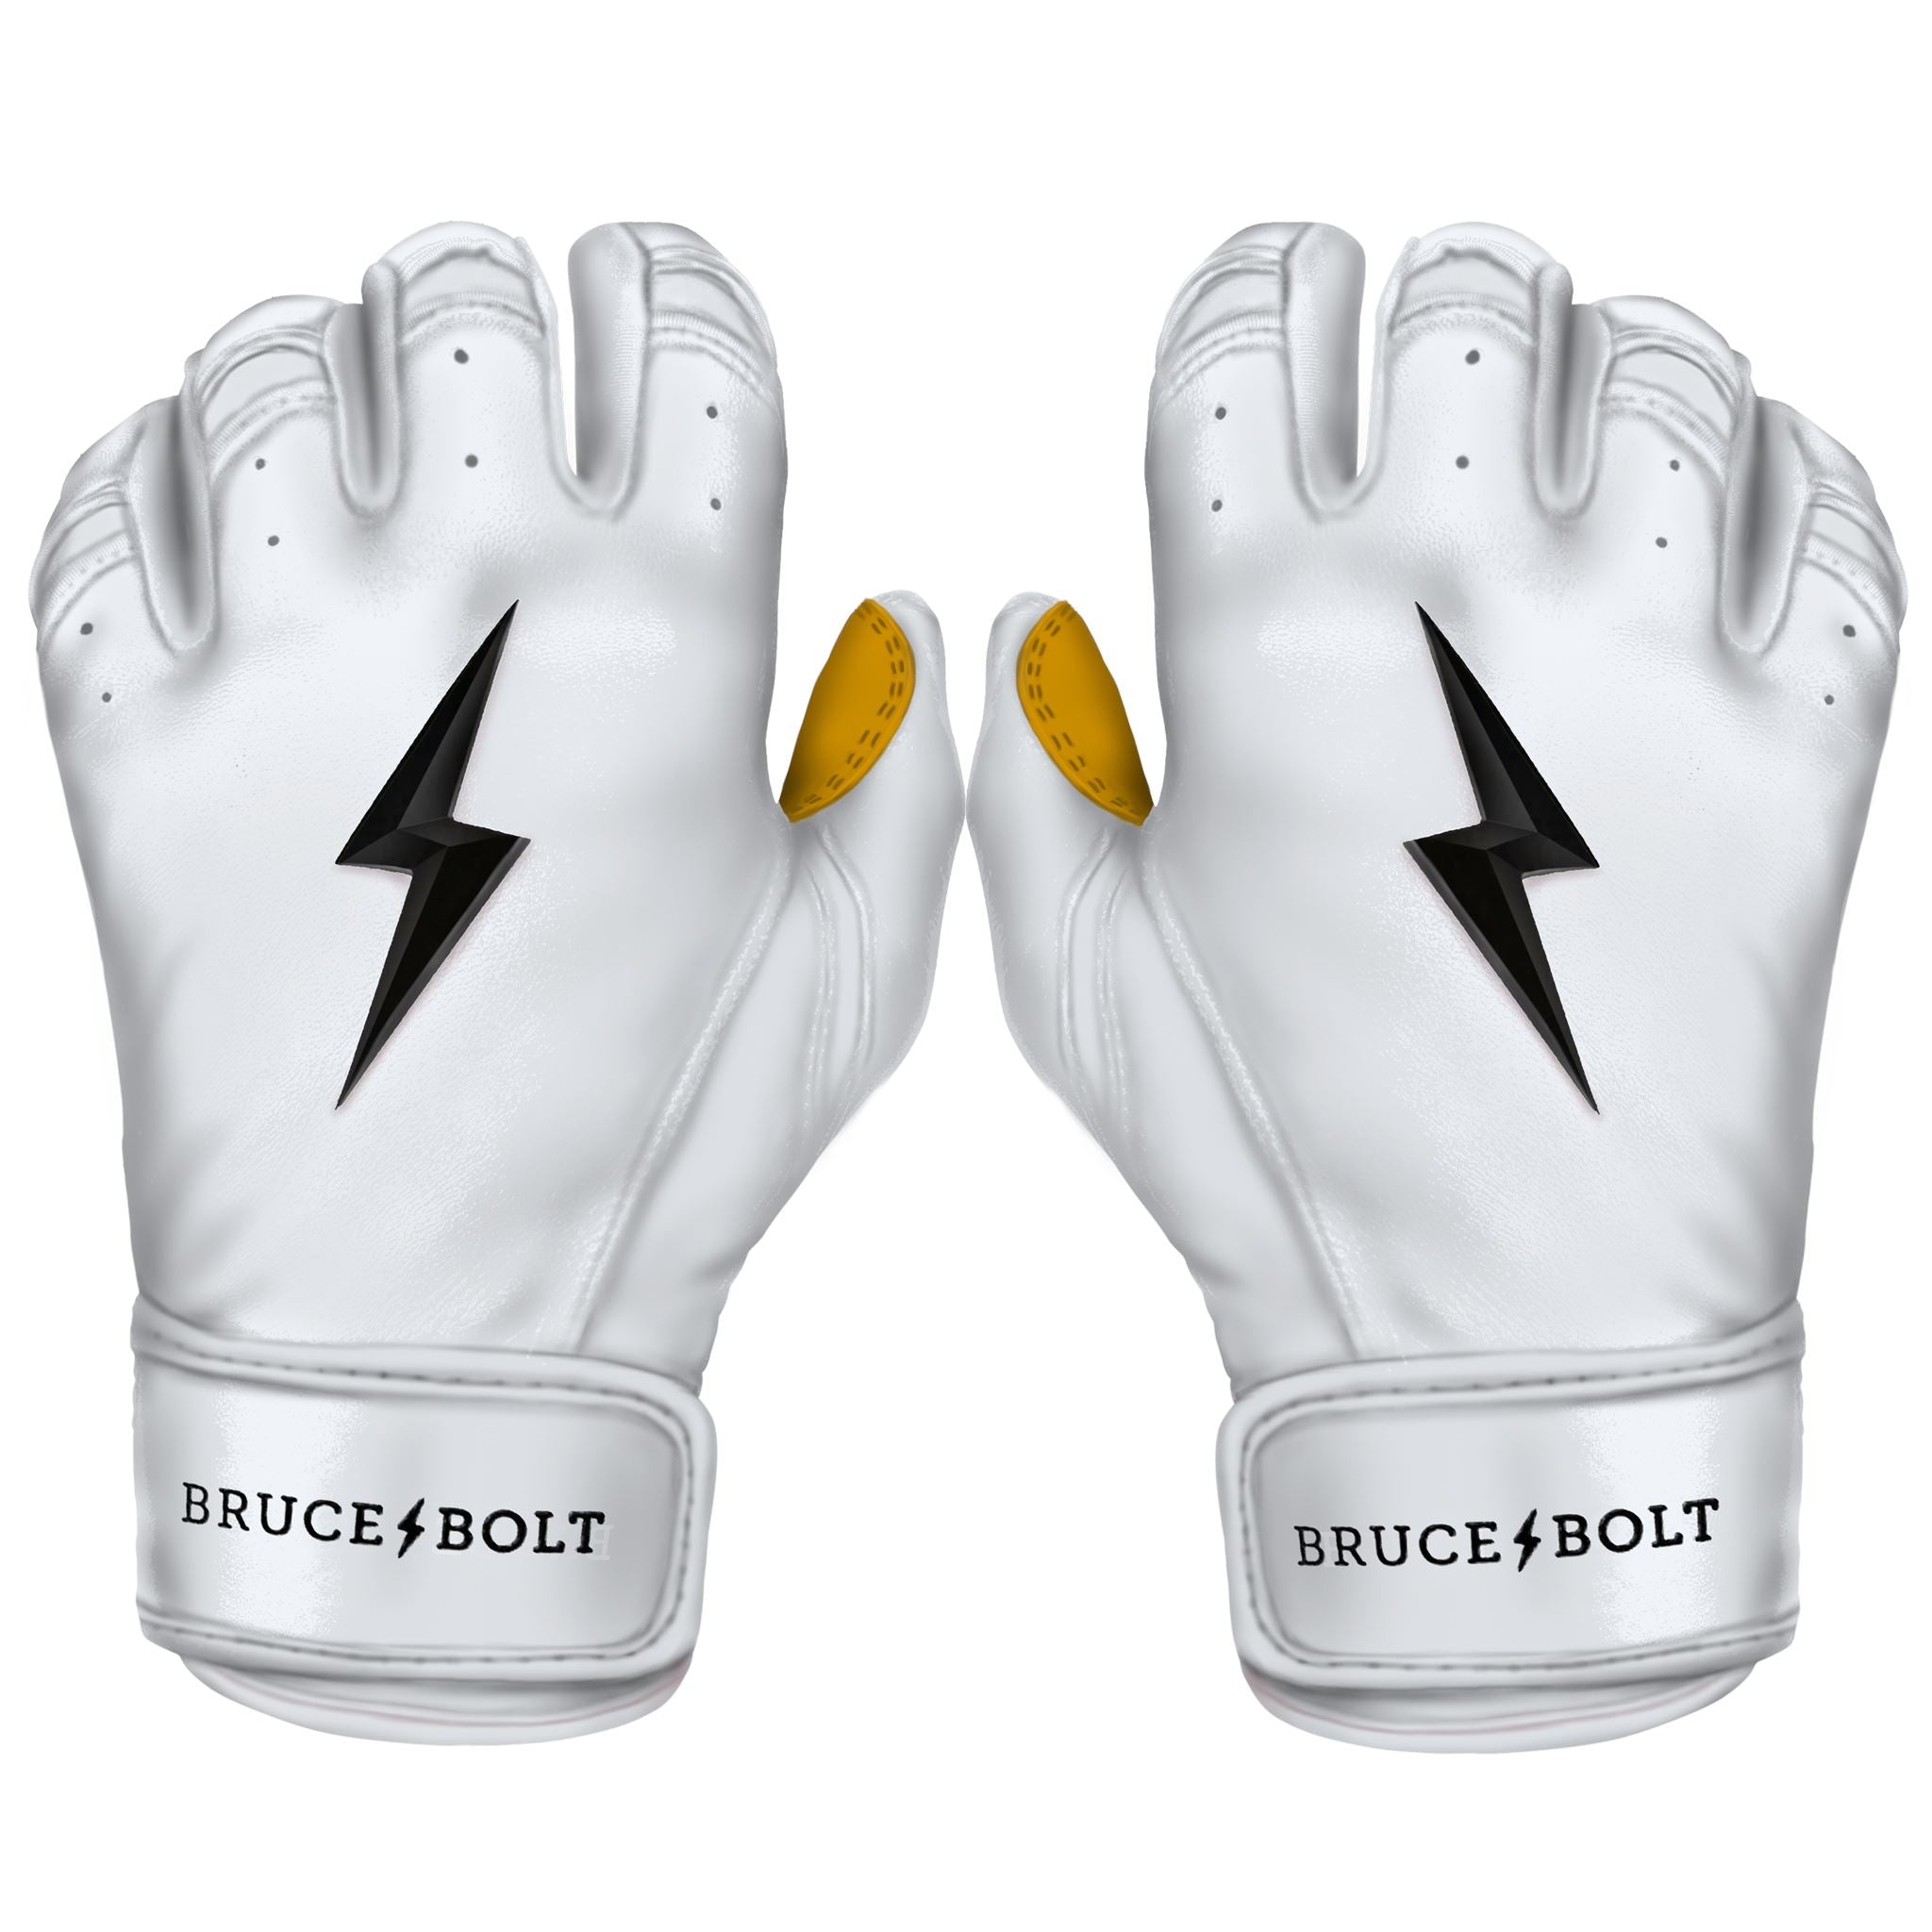 Bruce Bolt Batting Gloves Short Cuff Premium Pro - White - L